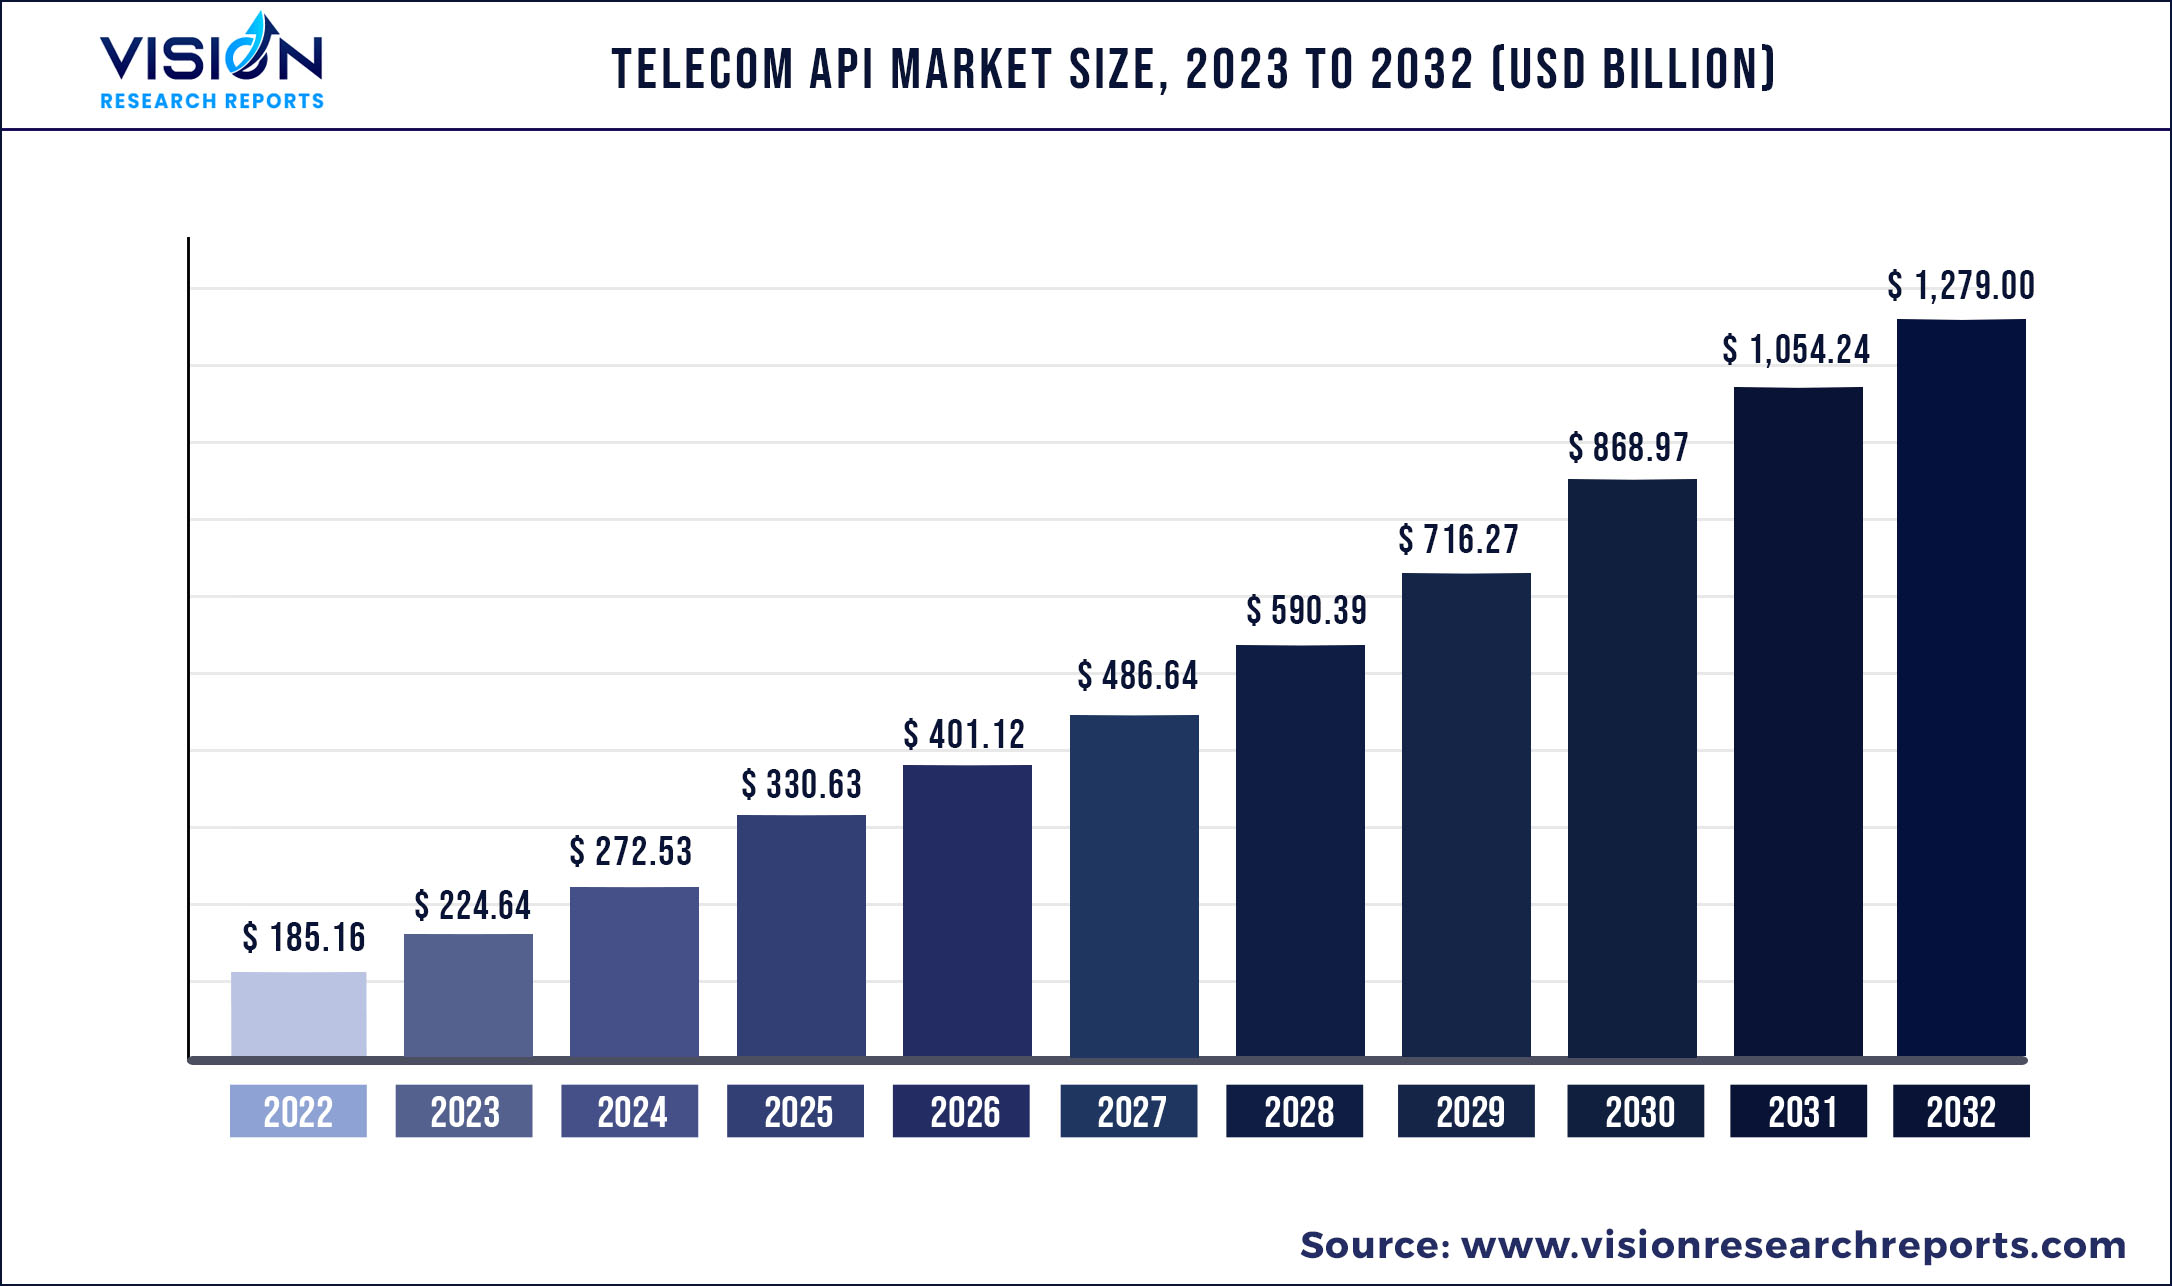 Telecom API Market Size 2023 to 2032